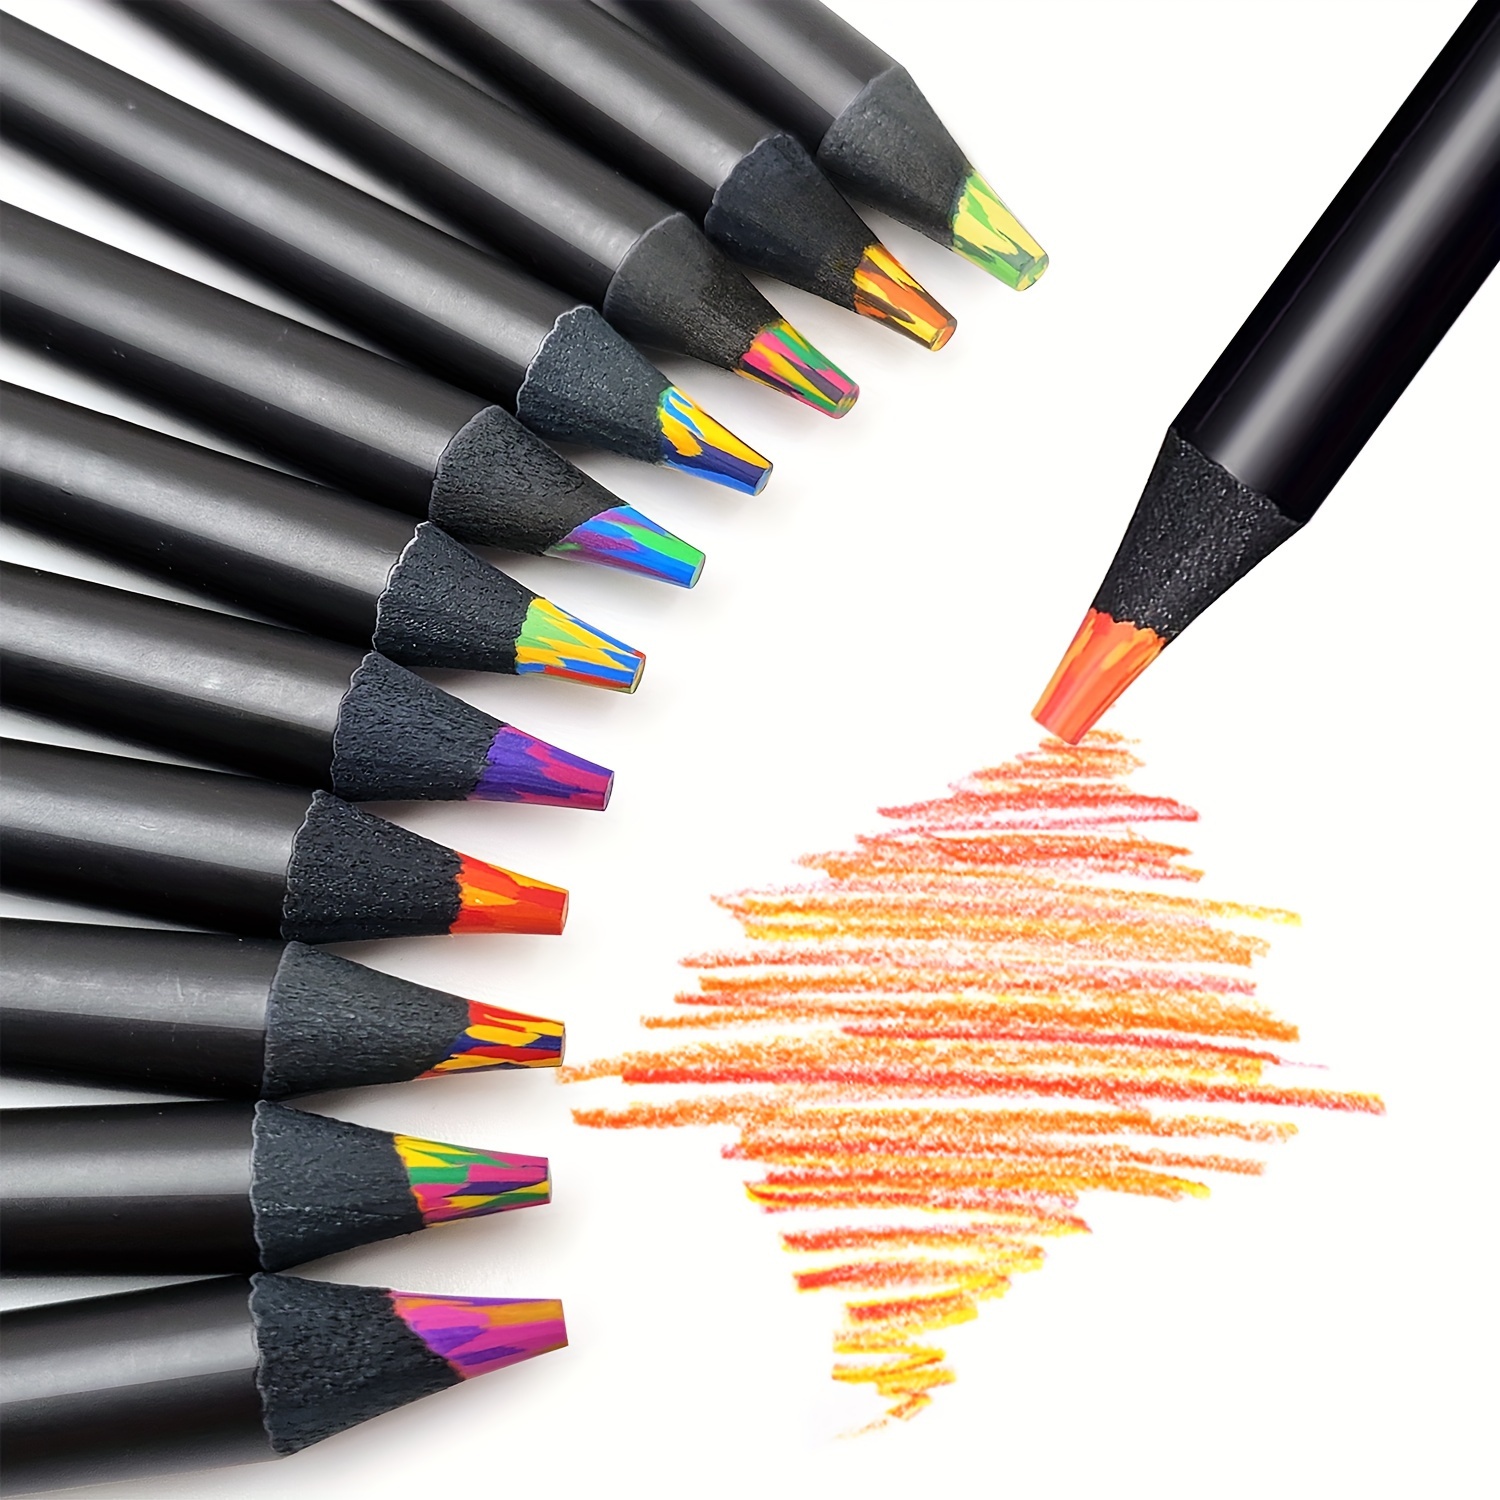 Colored Pencils, 72 Colors, Colored Pencils For Kids Color Pencil Set  Colored Pencils Bulk Adult Art Pencils Lapices De Colores Map Pencils  Professional Colored Pencils For Artists - Temu Austria